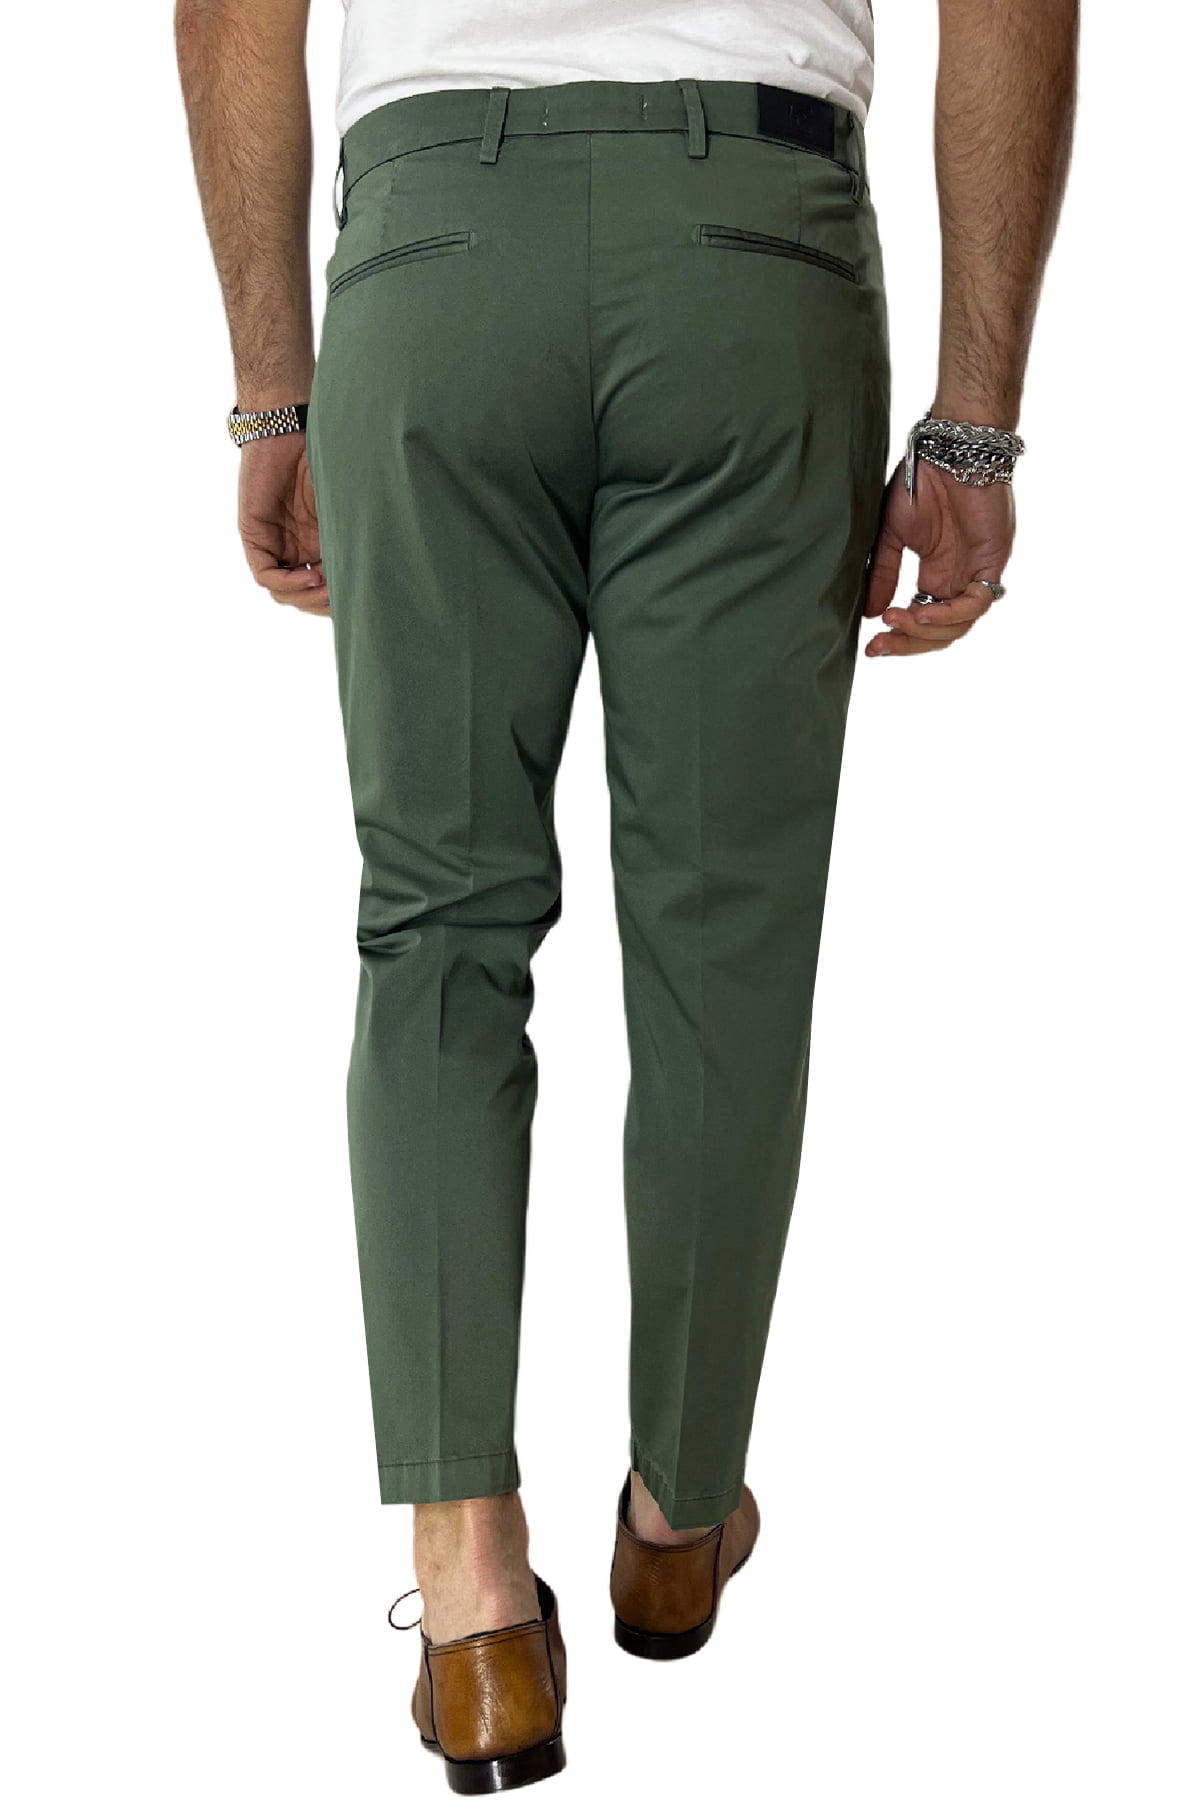 Pantalone uomo verde in Cotone tasca america leggermente elastico estivo